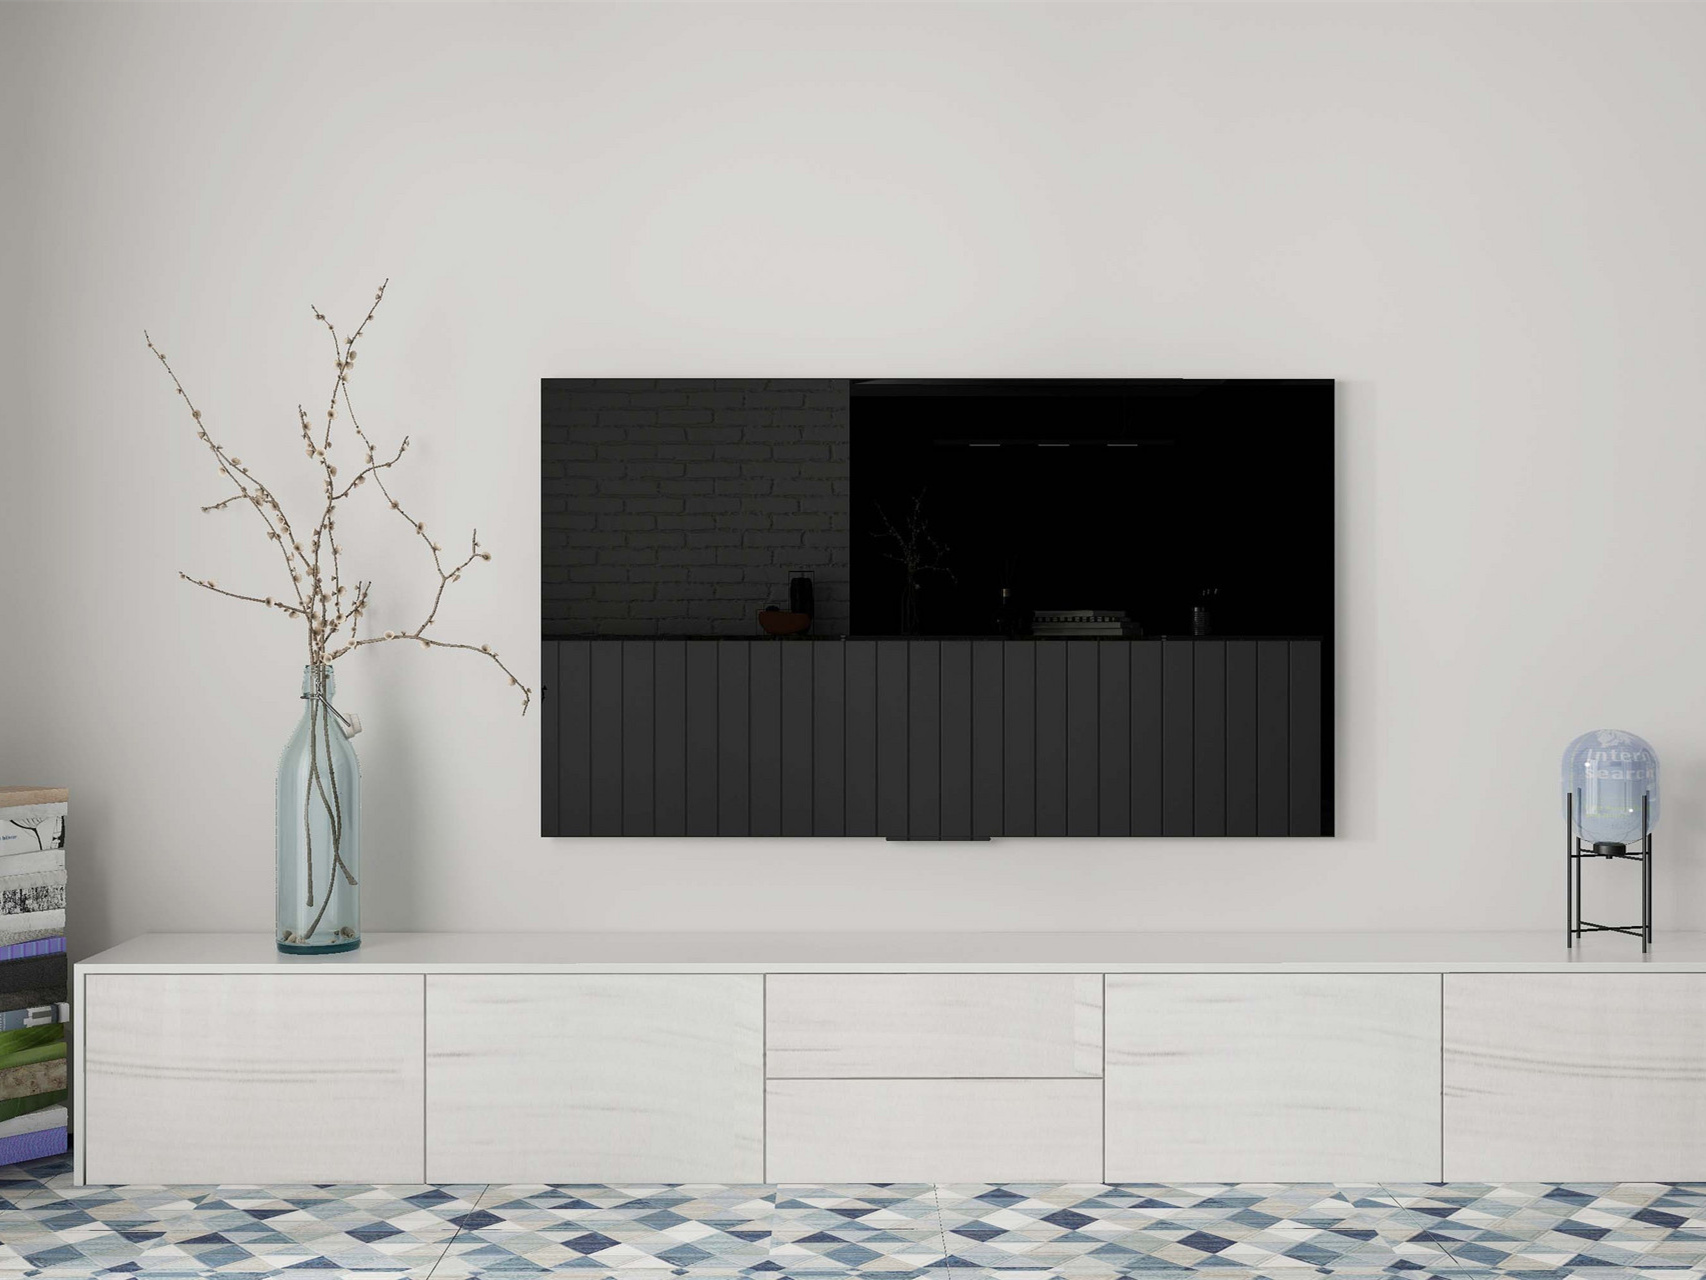 时尚电视背景墙设计需要遵循的4大原则